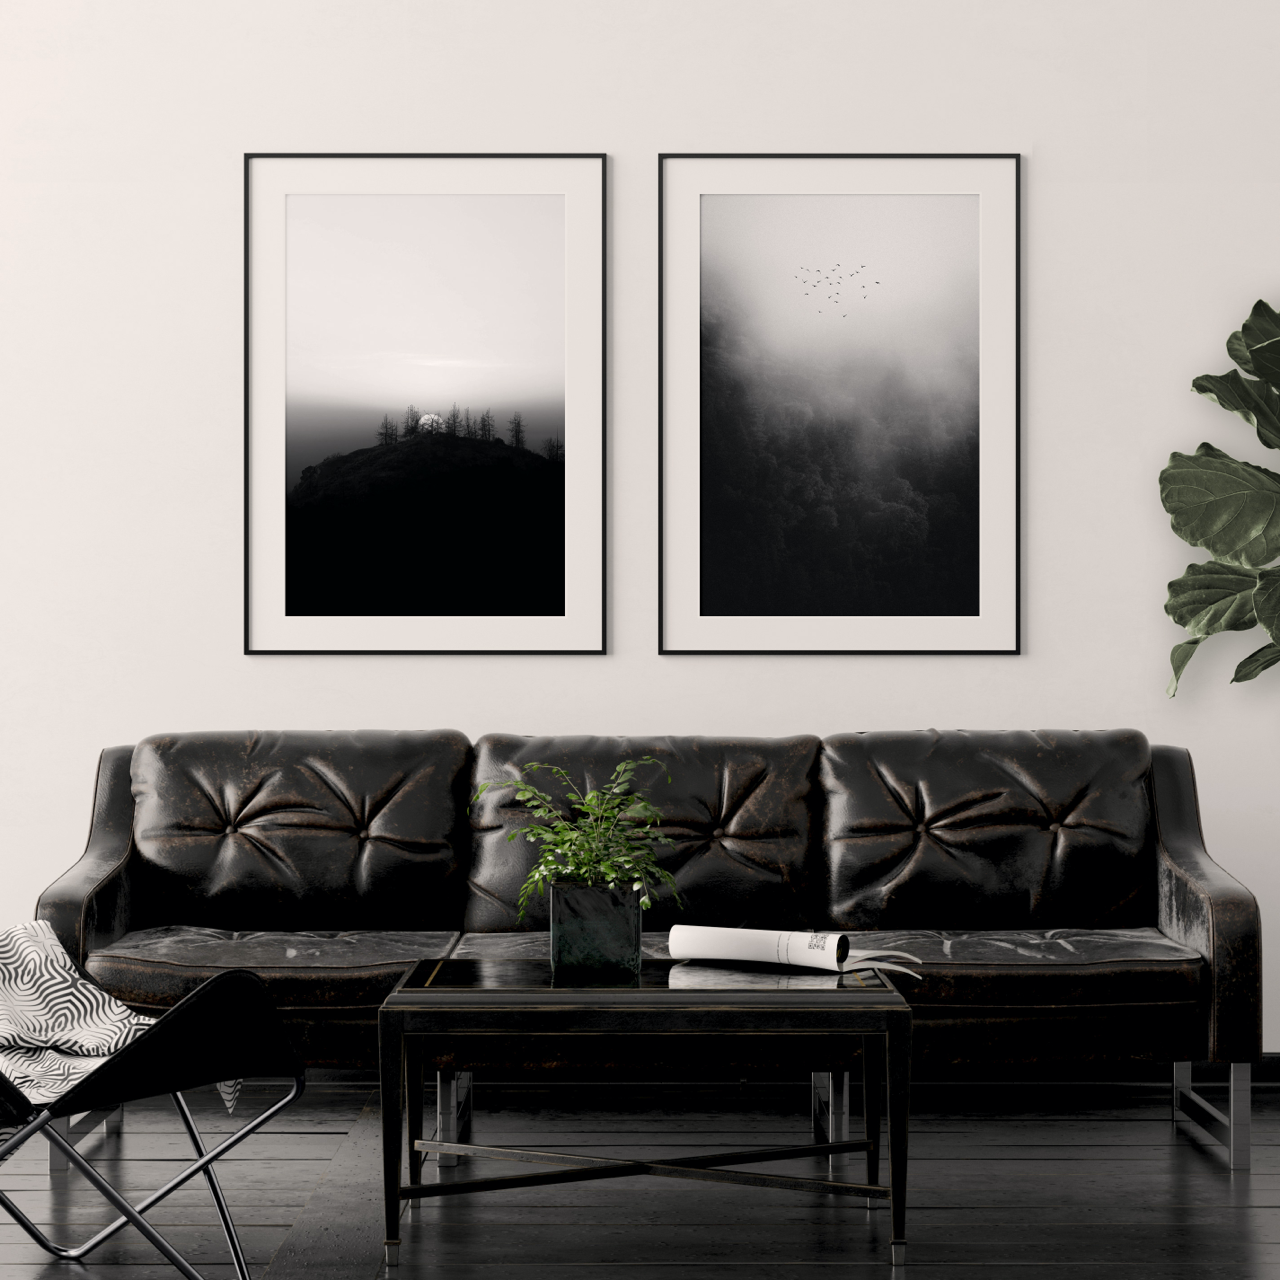 Black and white art in modern living room